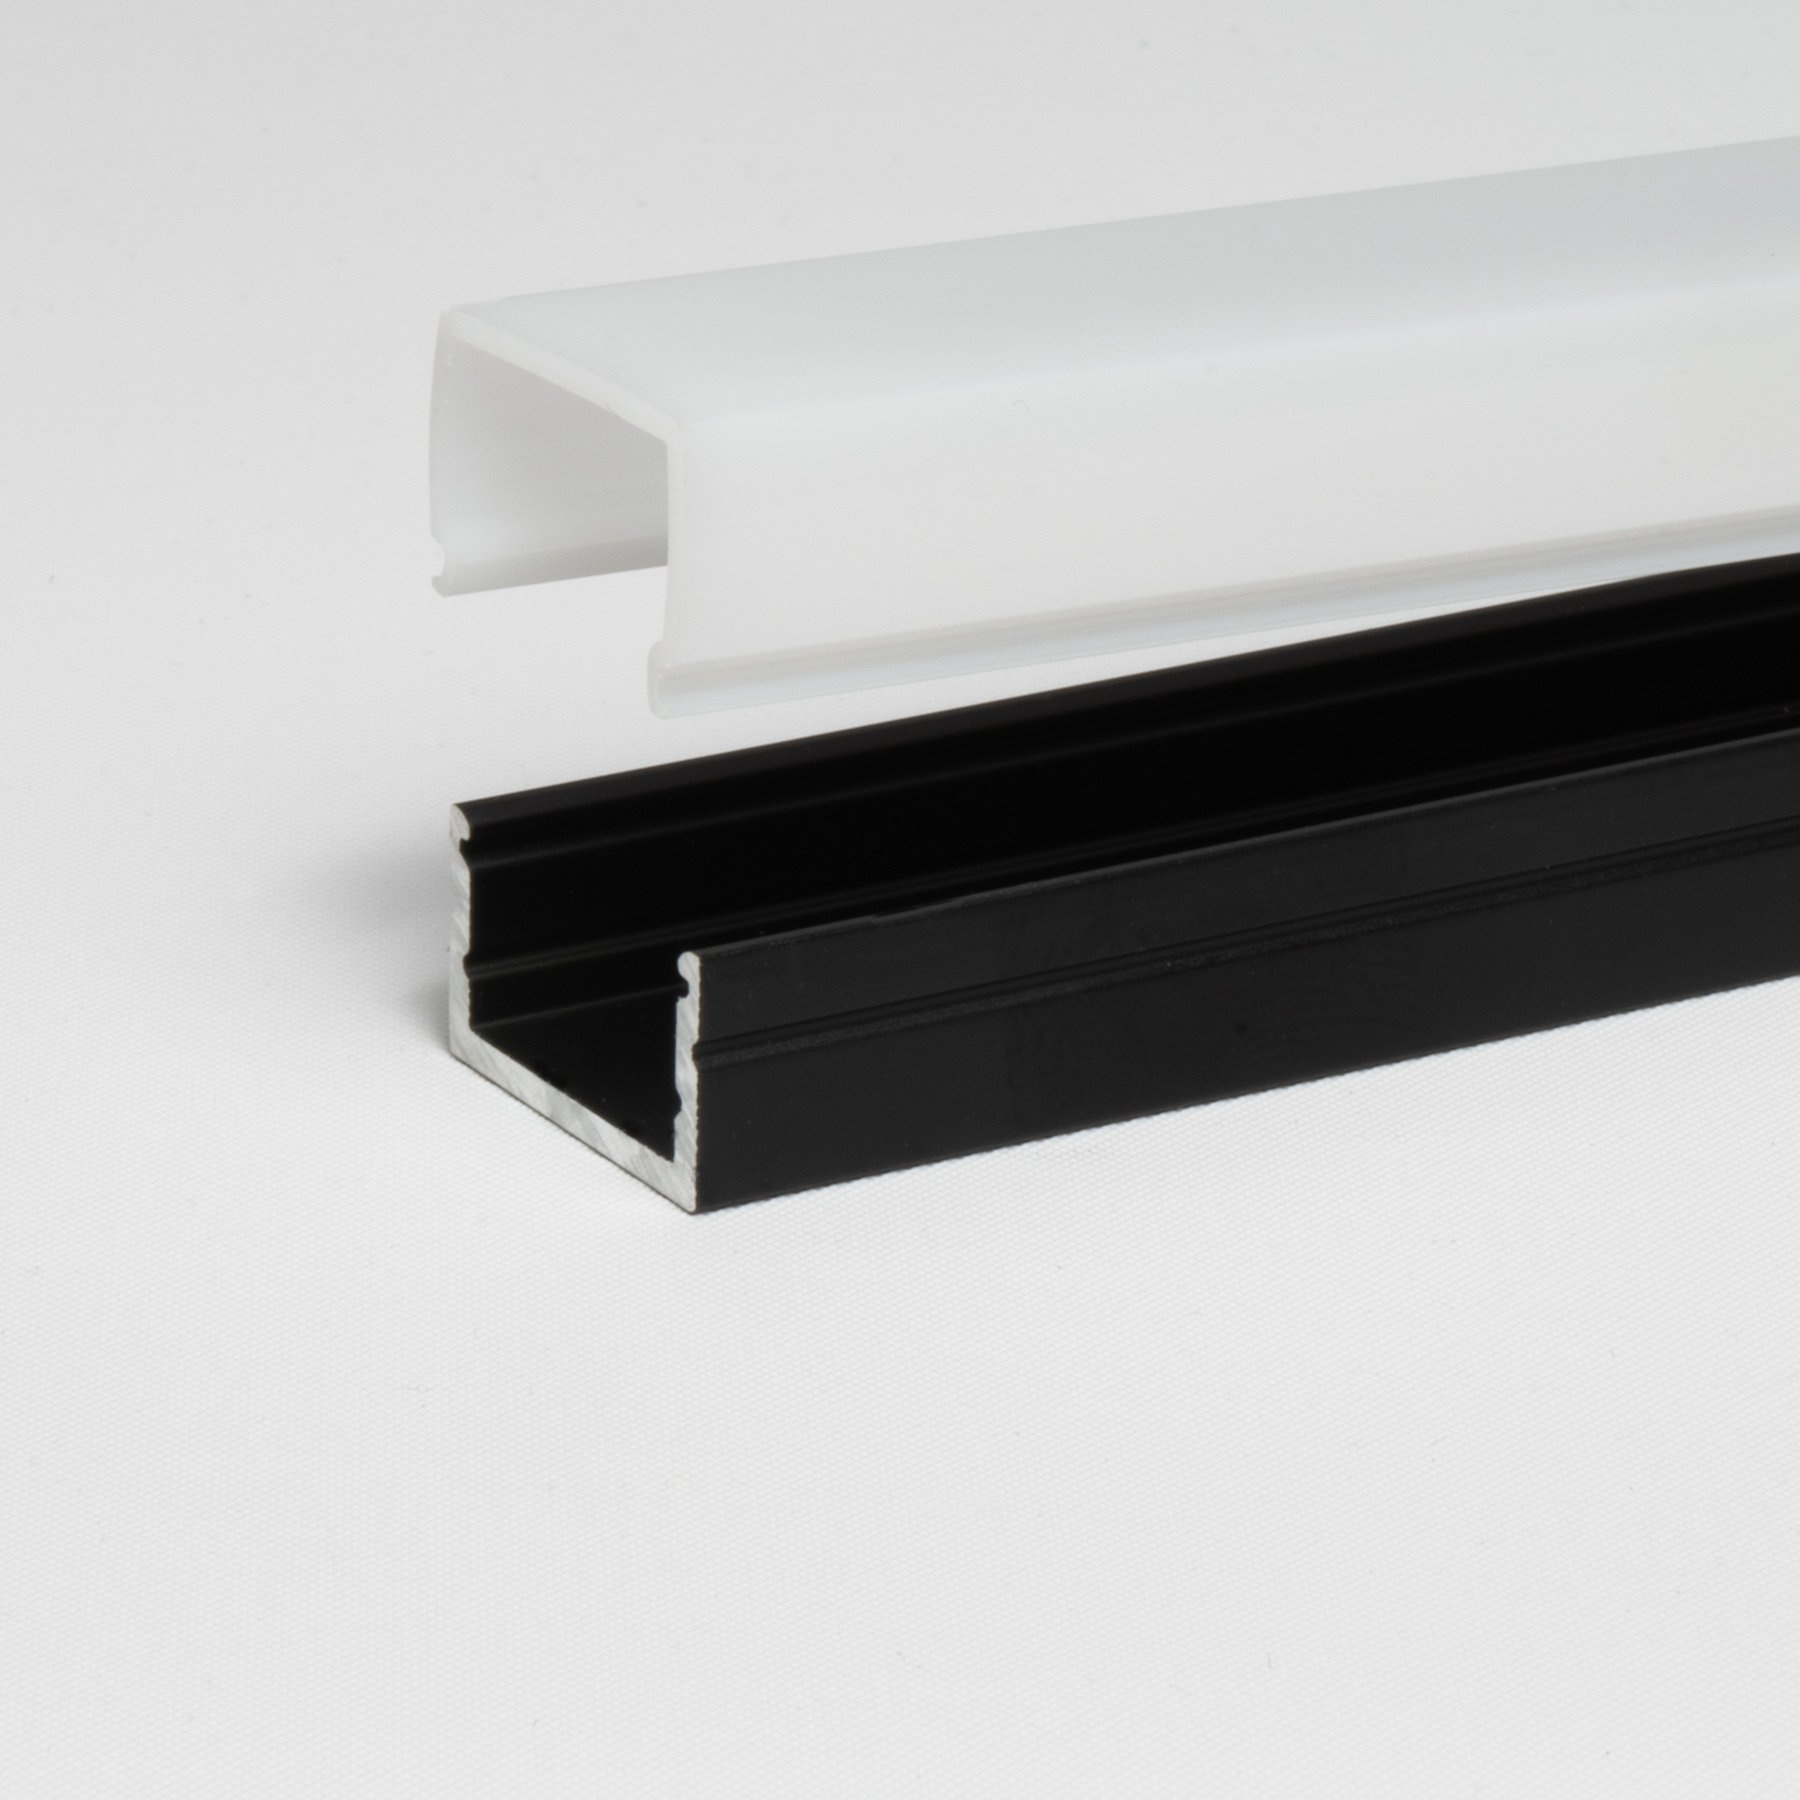 Profil en Aluminium - NOIR - Surface - U - pour bande LED - 2 mètres